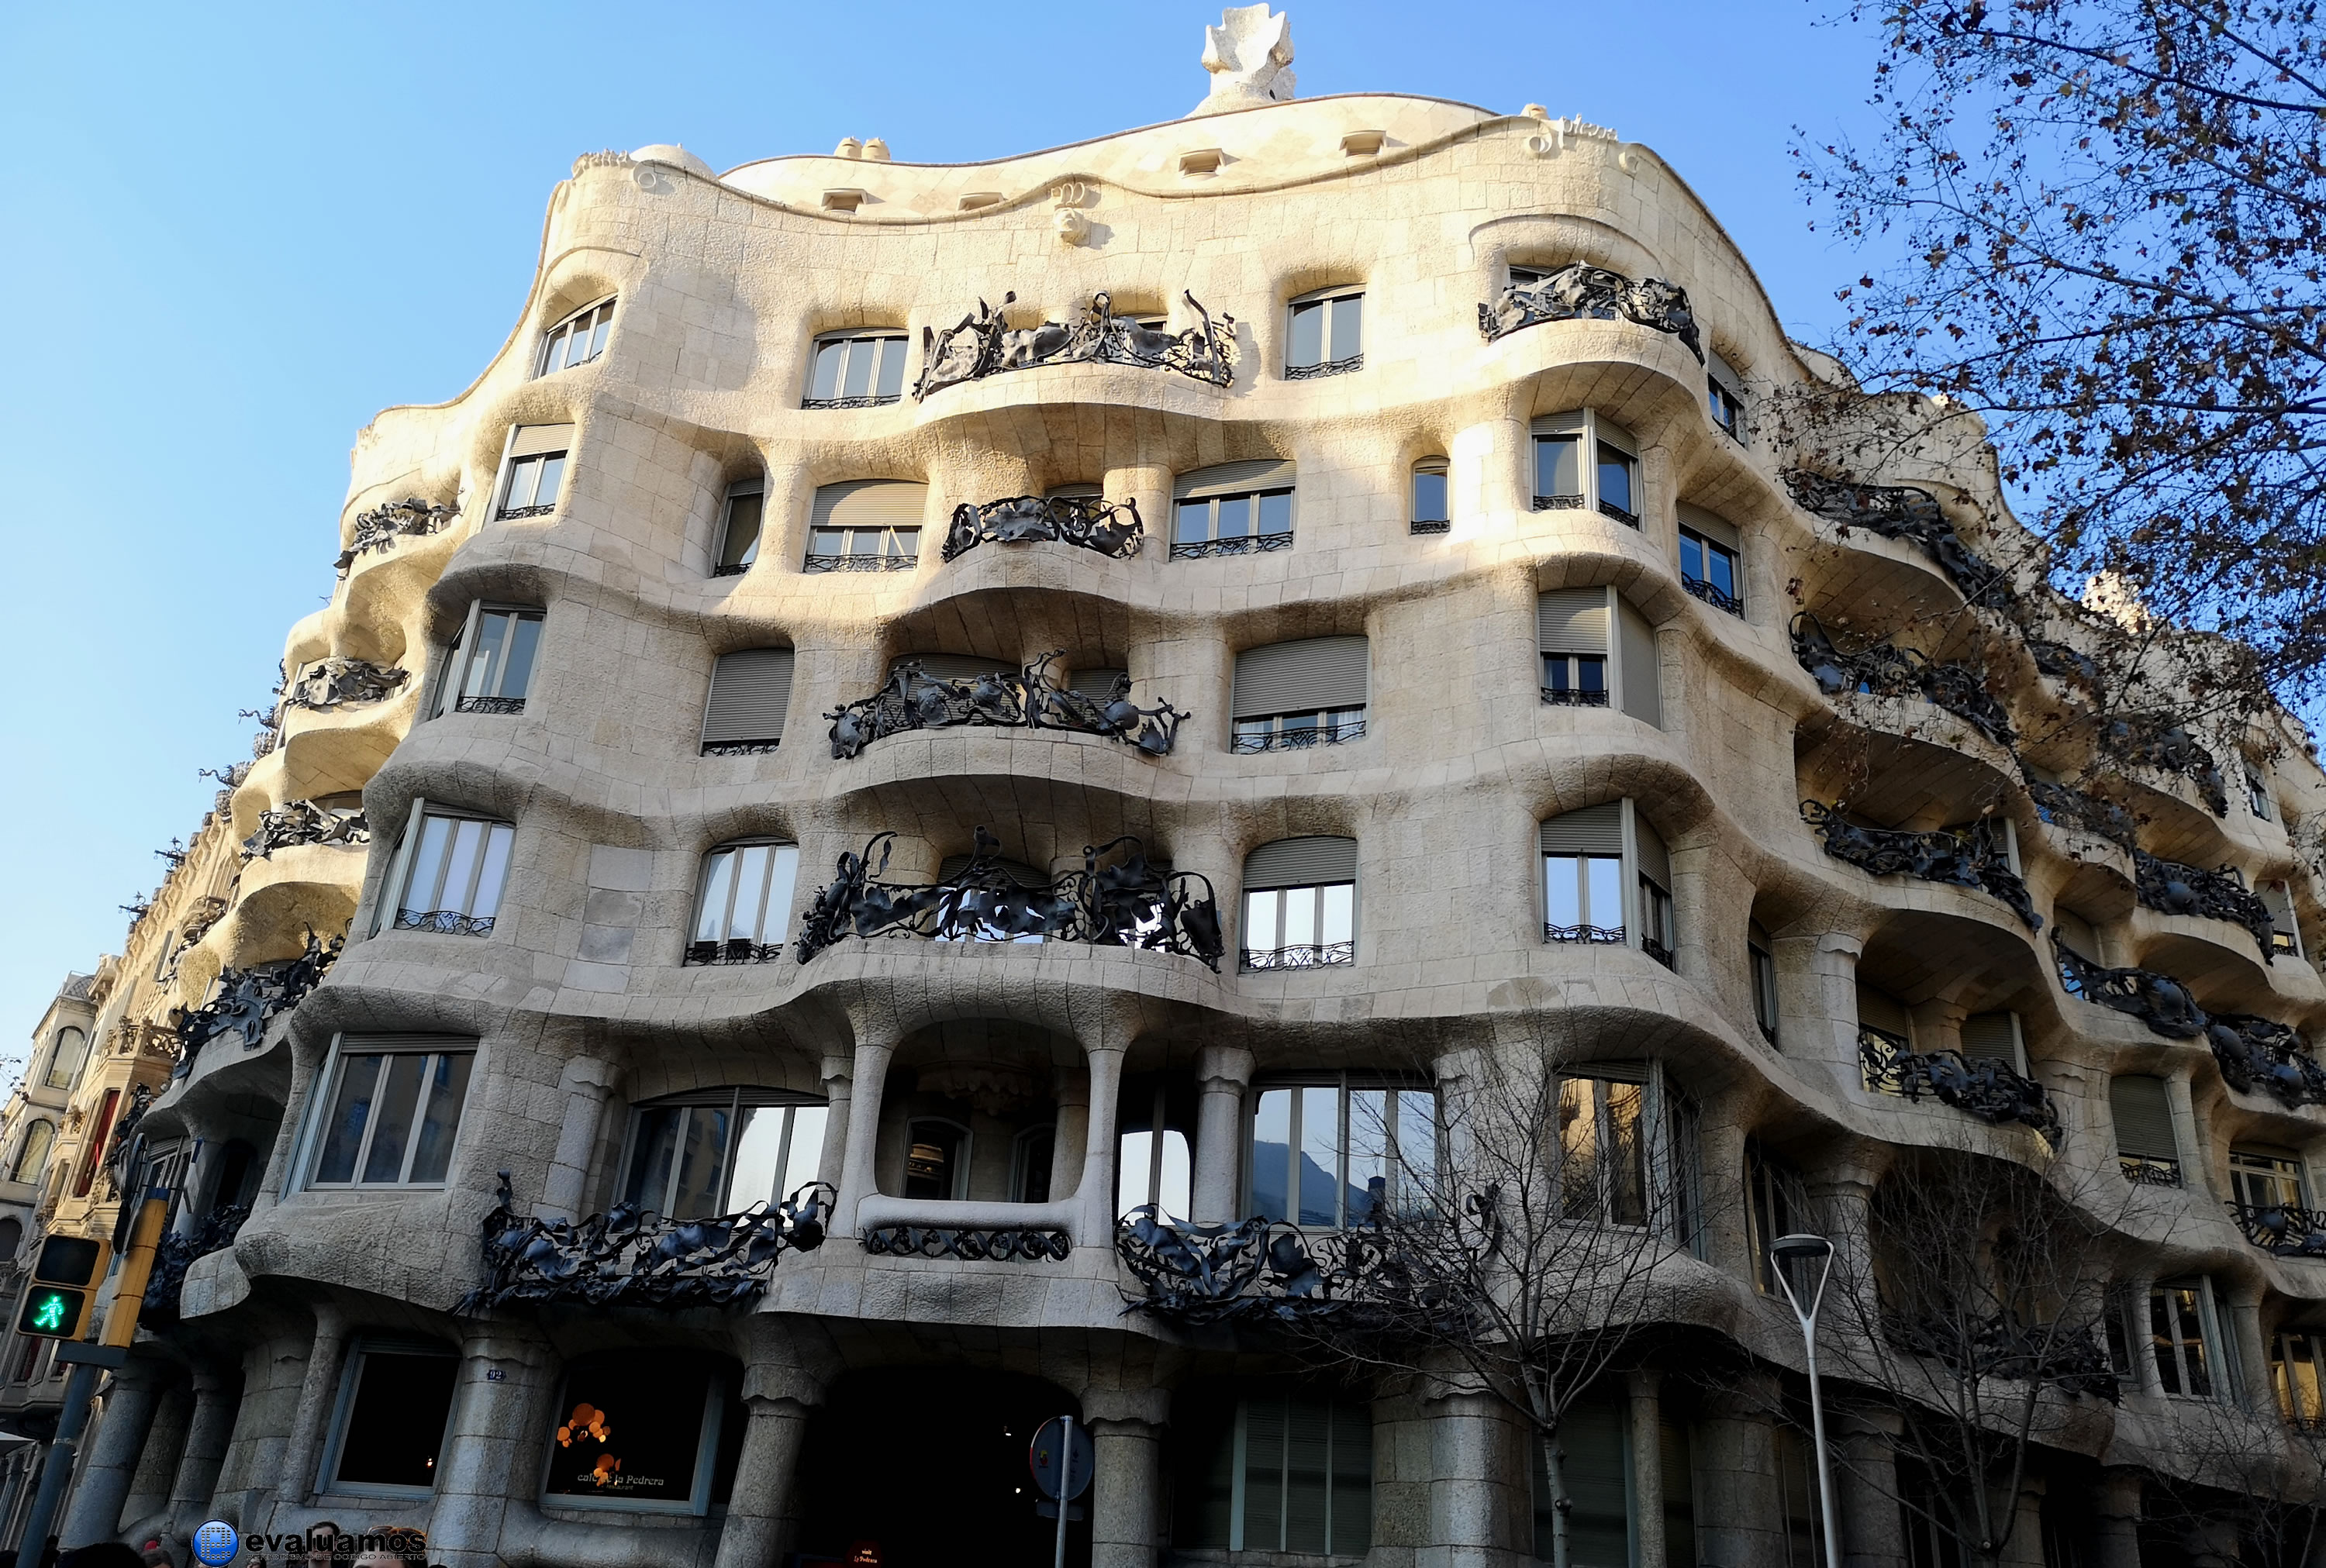 La Pedrera de Antoni Gaudí, en Barcelona